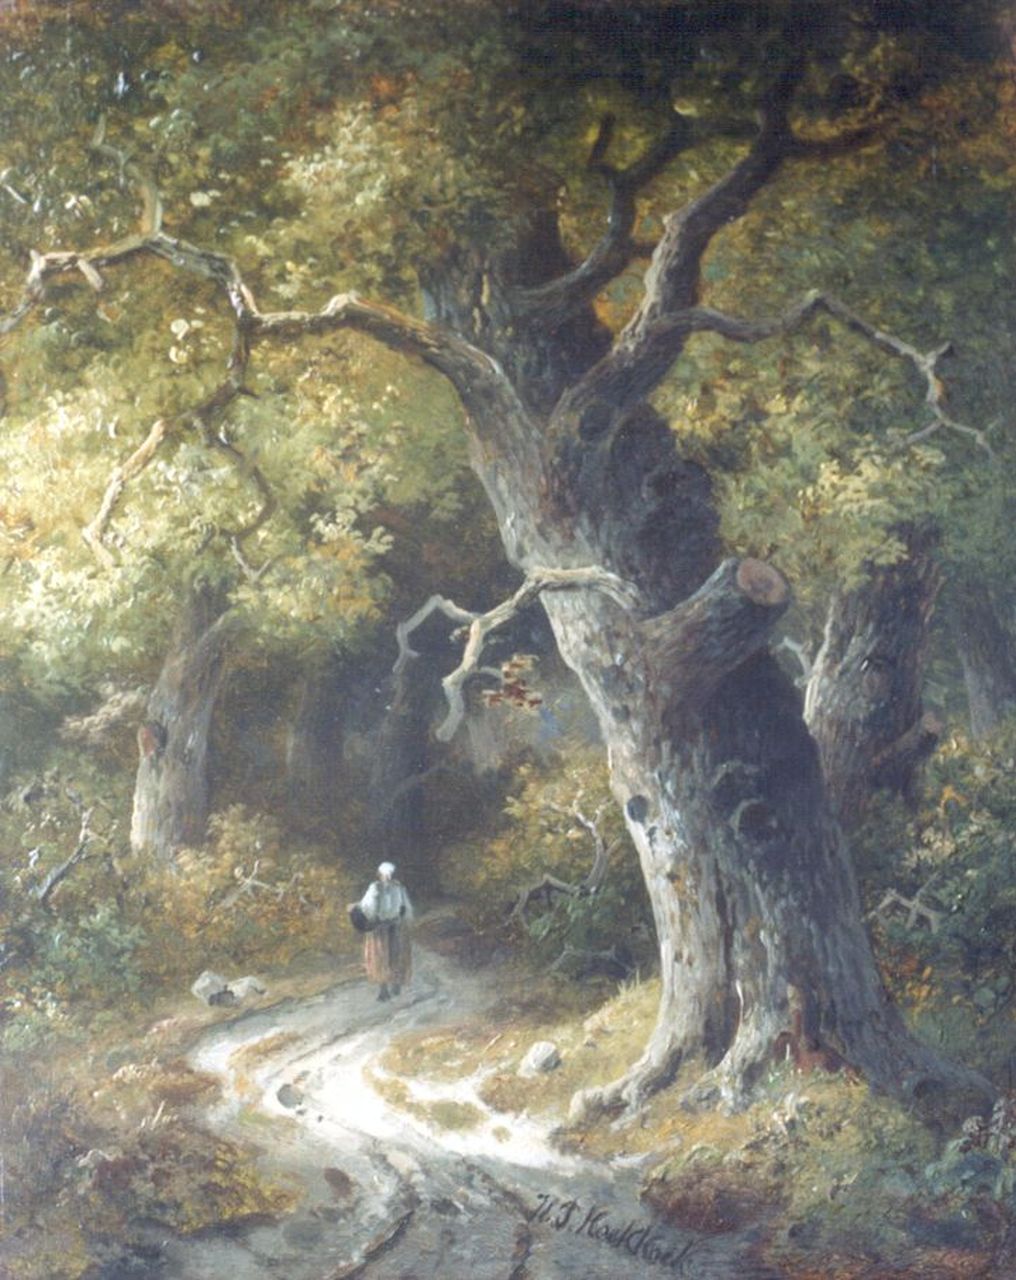 Koekkoek P.H.  | Pieter Hendrik 'H.P.' Koekkoek, Boerenvrouw op een bospad, olieverf op paneel 25,5 x 20,7 cm, gesigneerd middenonder